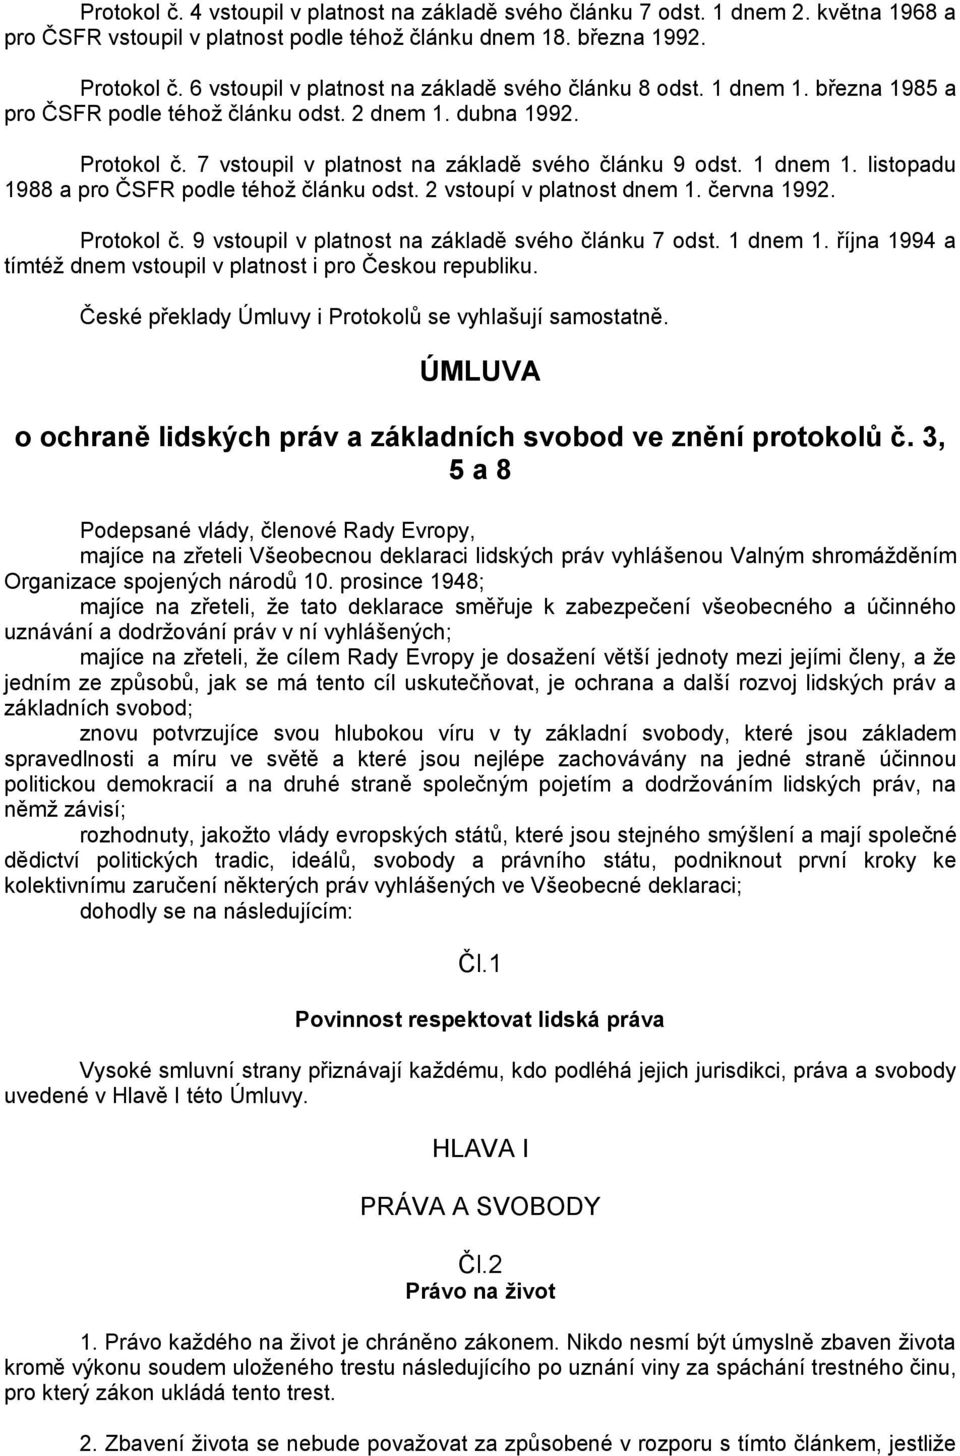 1 dnem 1. listopadu 1988 a pro ČSFR podle téhoţ článku odst. 2 vstoupí v platnost dnem 1. června 1992. Protokol č. 9 vstoupil v platnost na základě svého článku 7 odst. 1 dnem 1.